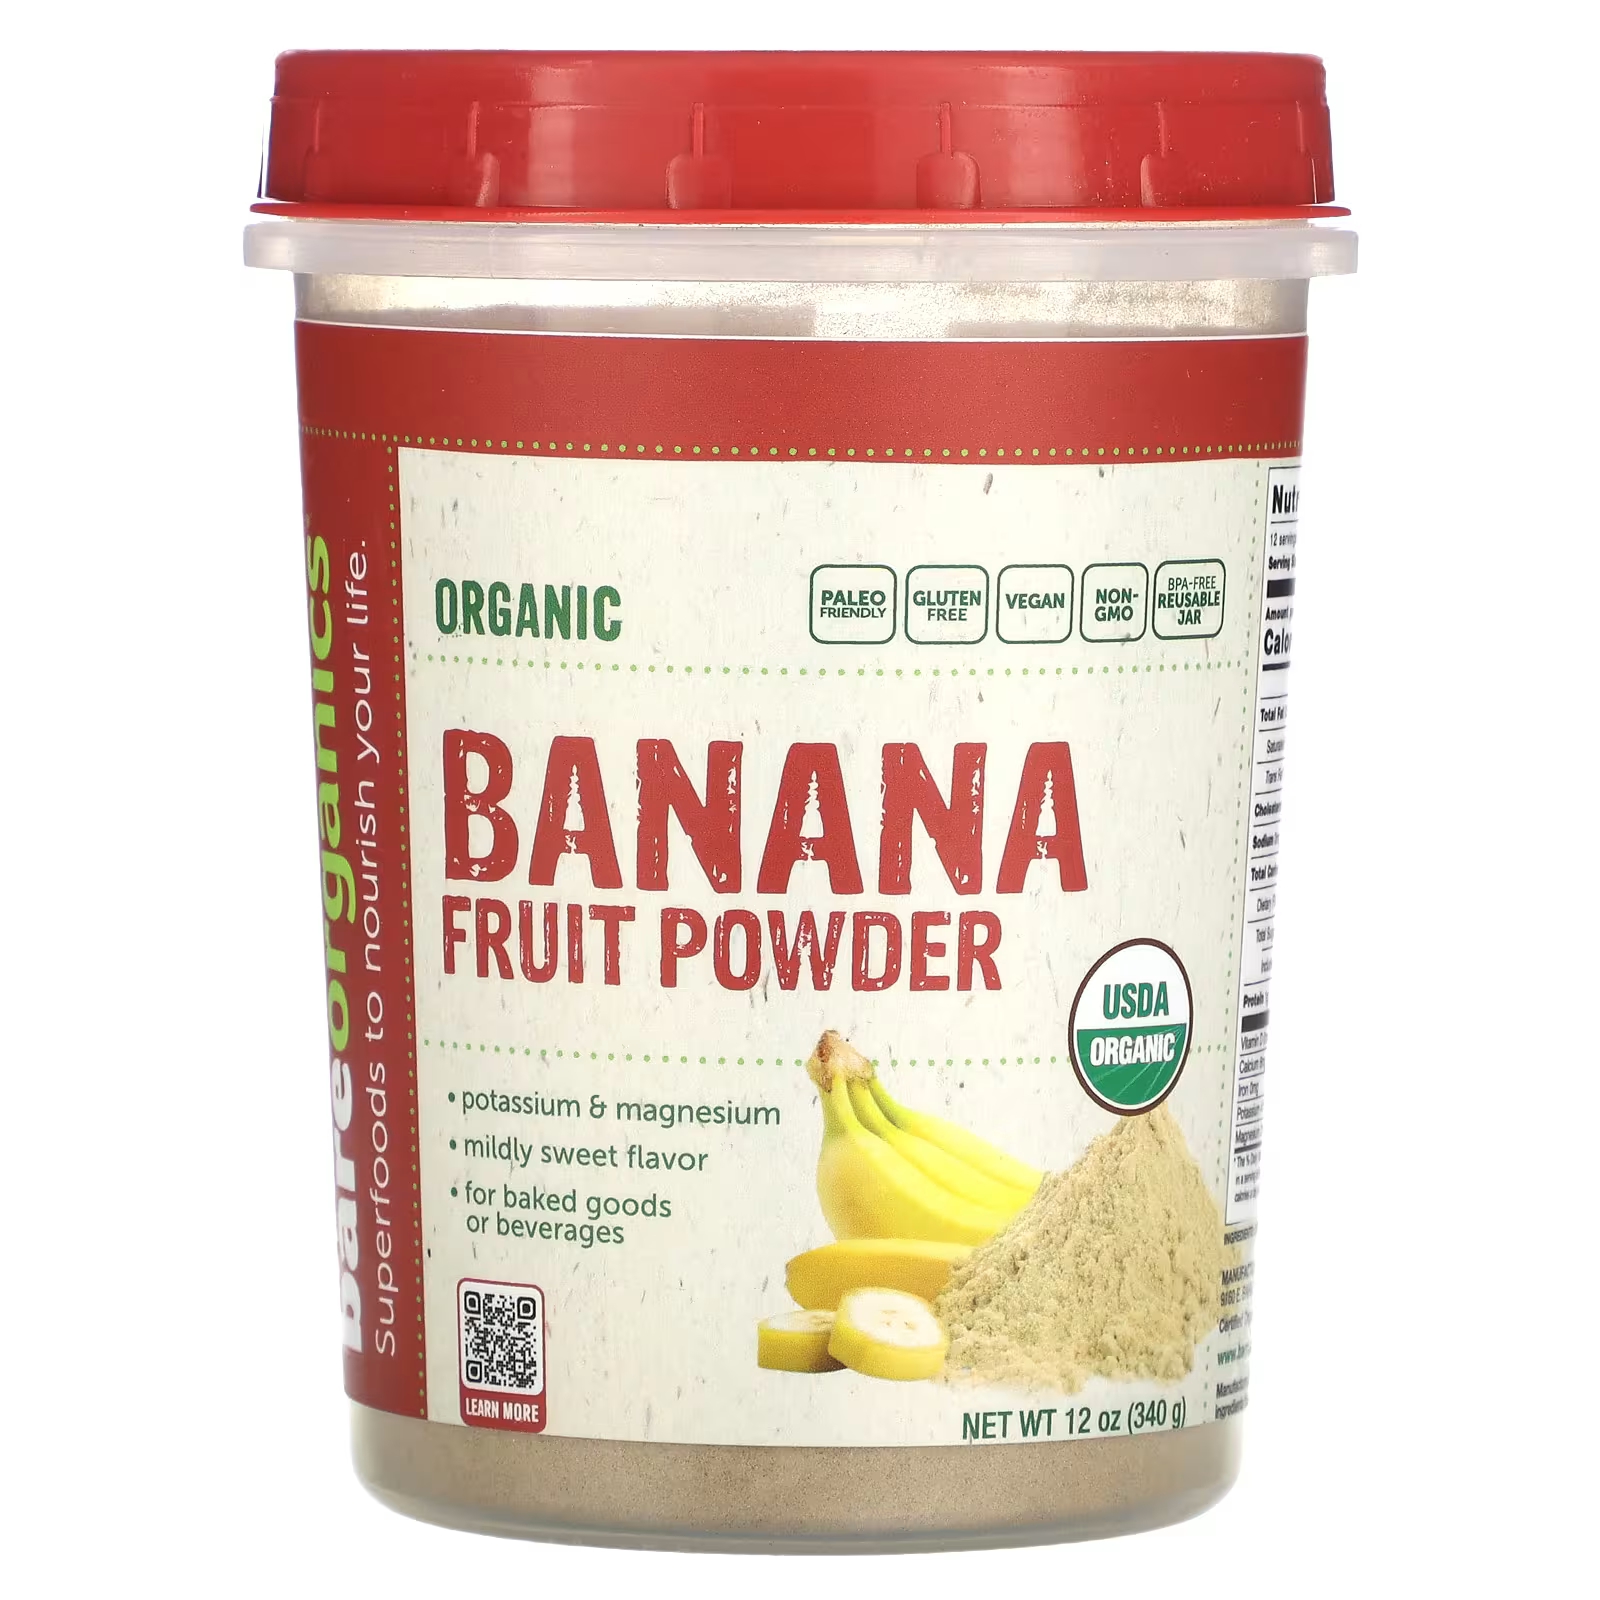 Порошок органический BareOrganics бананово-фруктовый, 340 г органический порошок хлореллы bareorganics 227 г